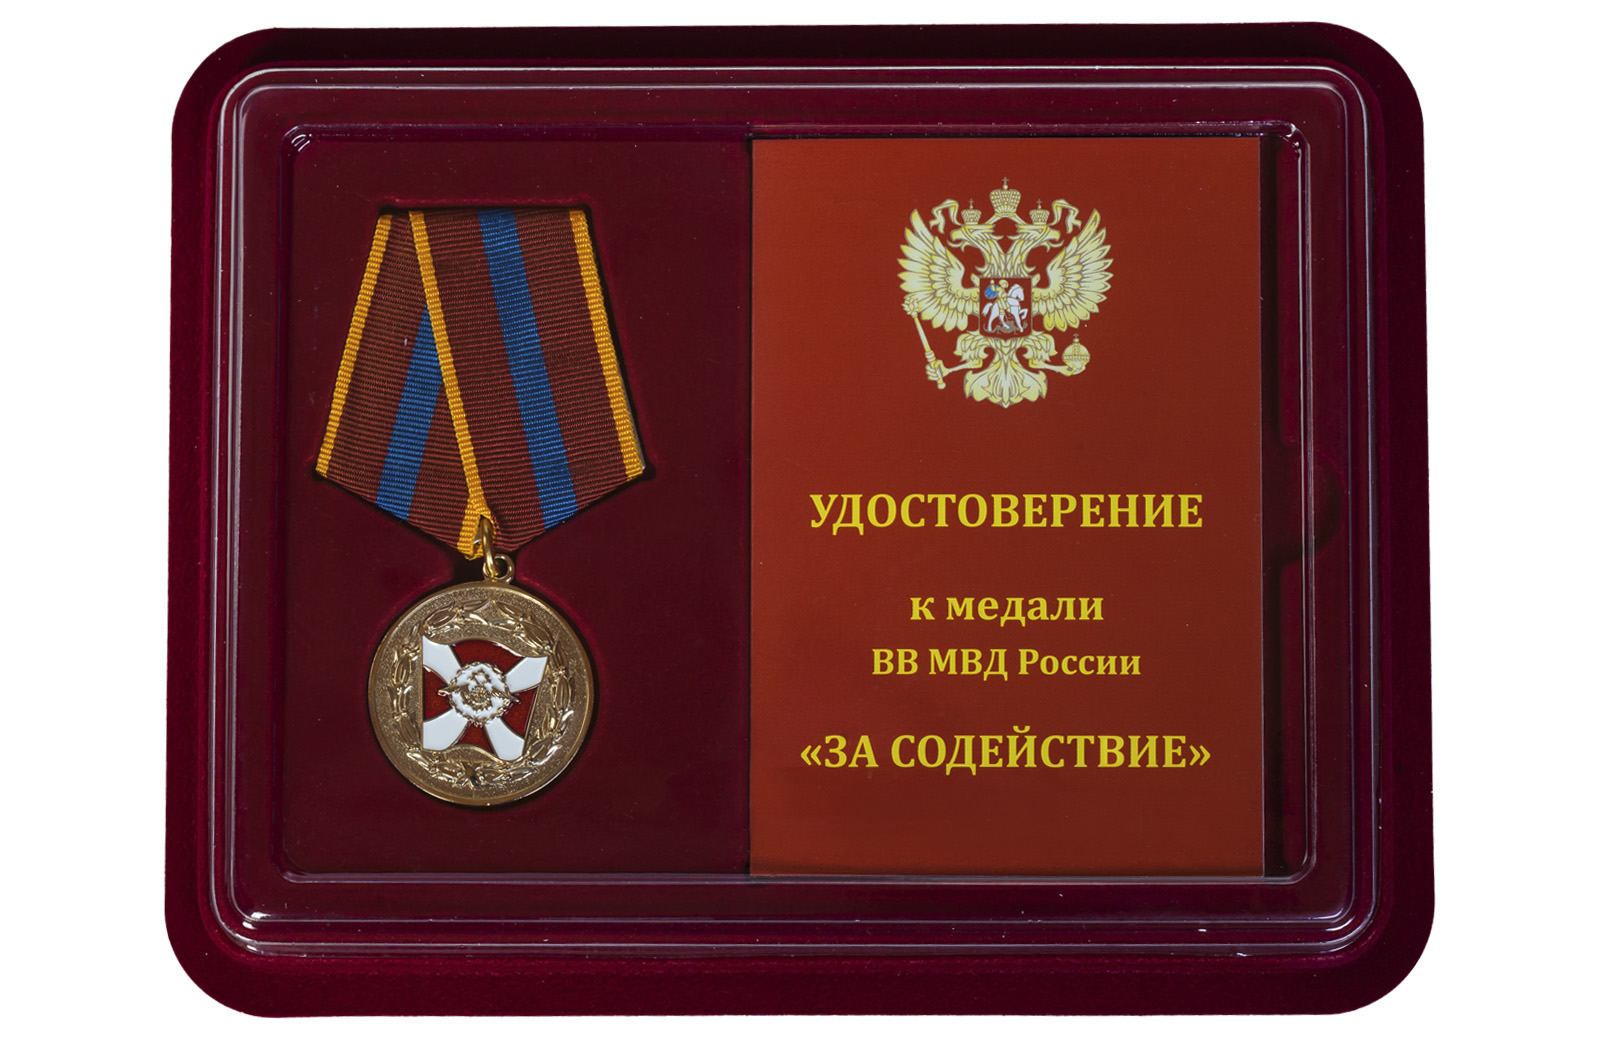 Купить медаль ВВ МВД РФ За содействие по экономичной цене